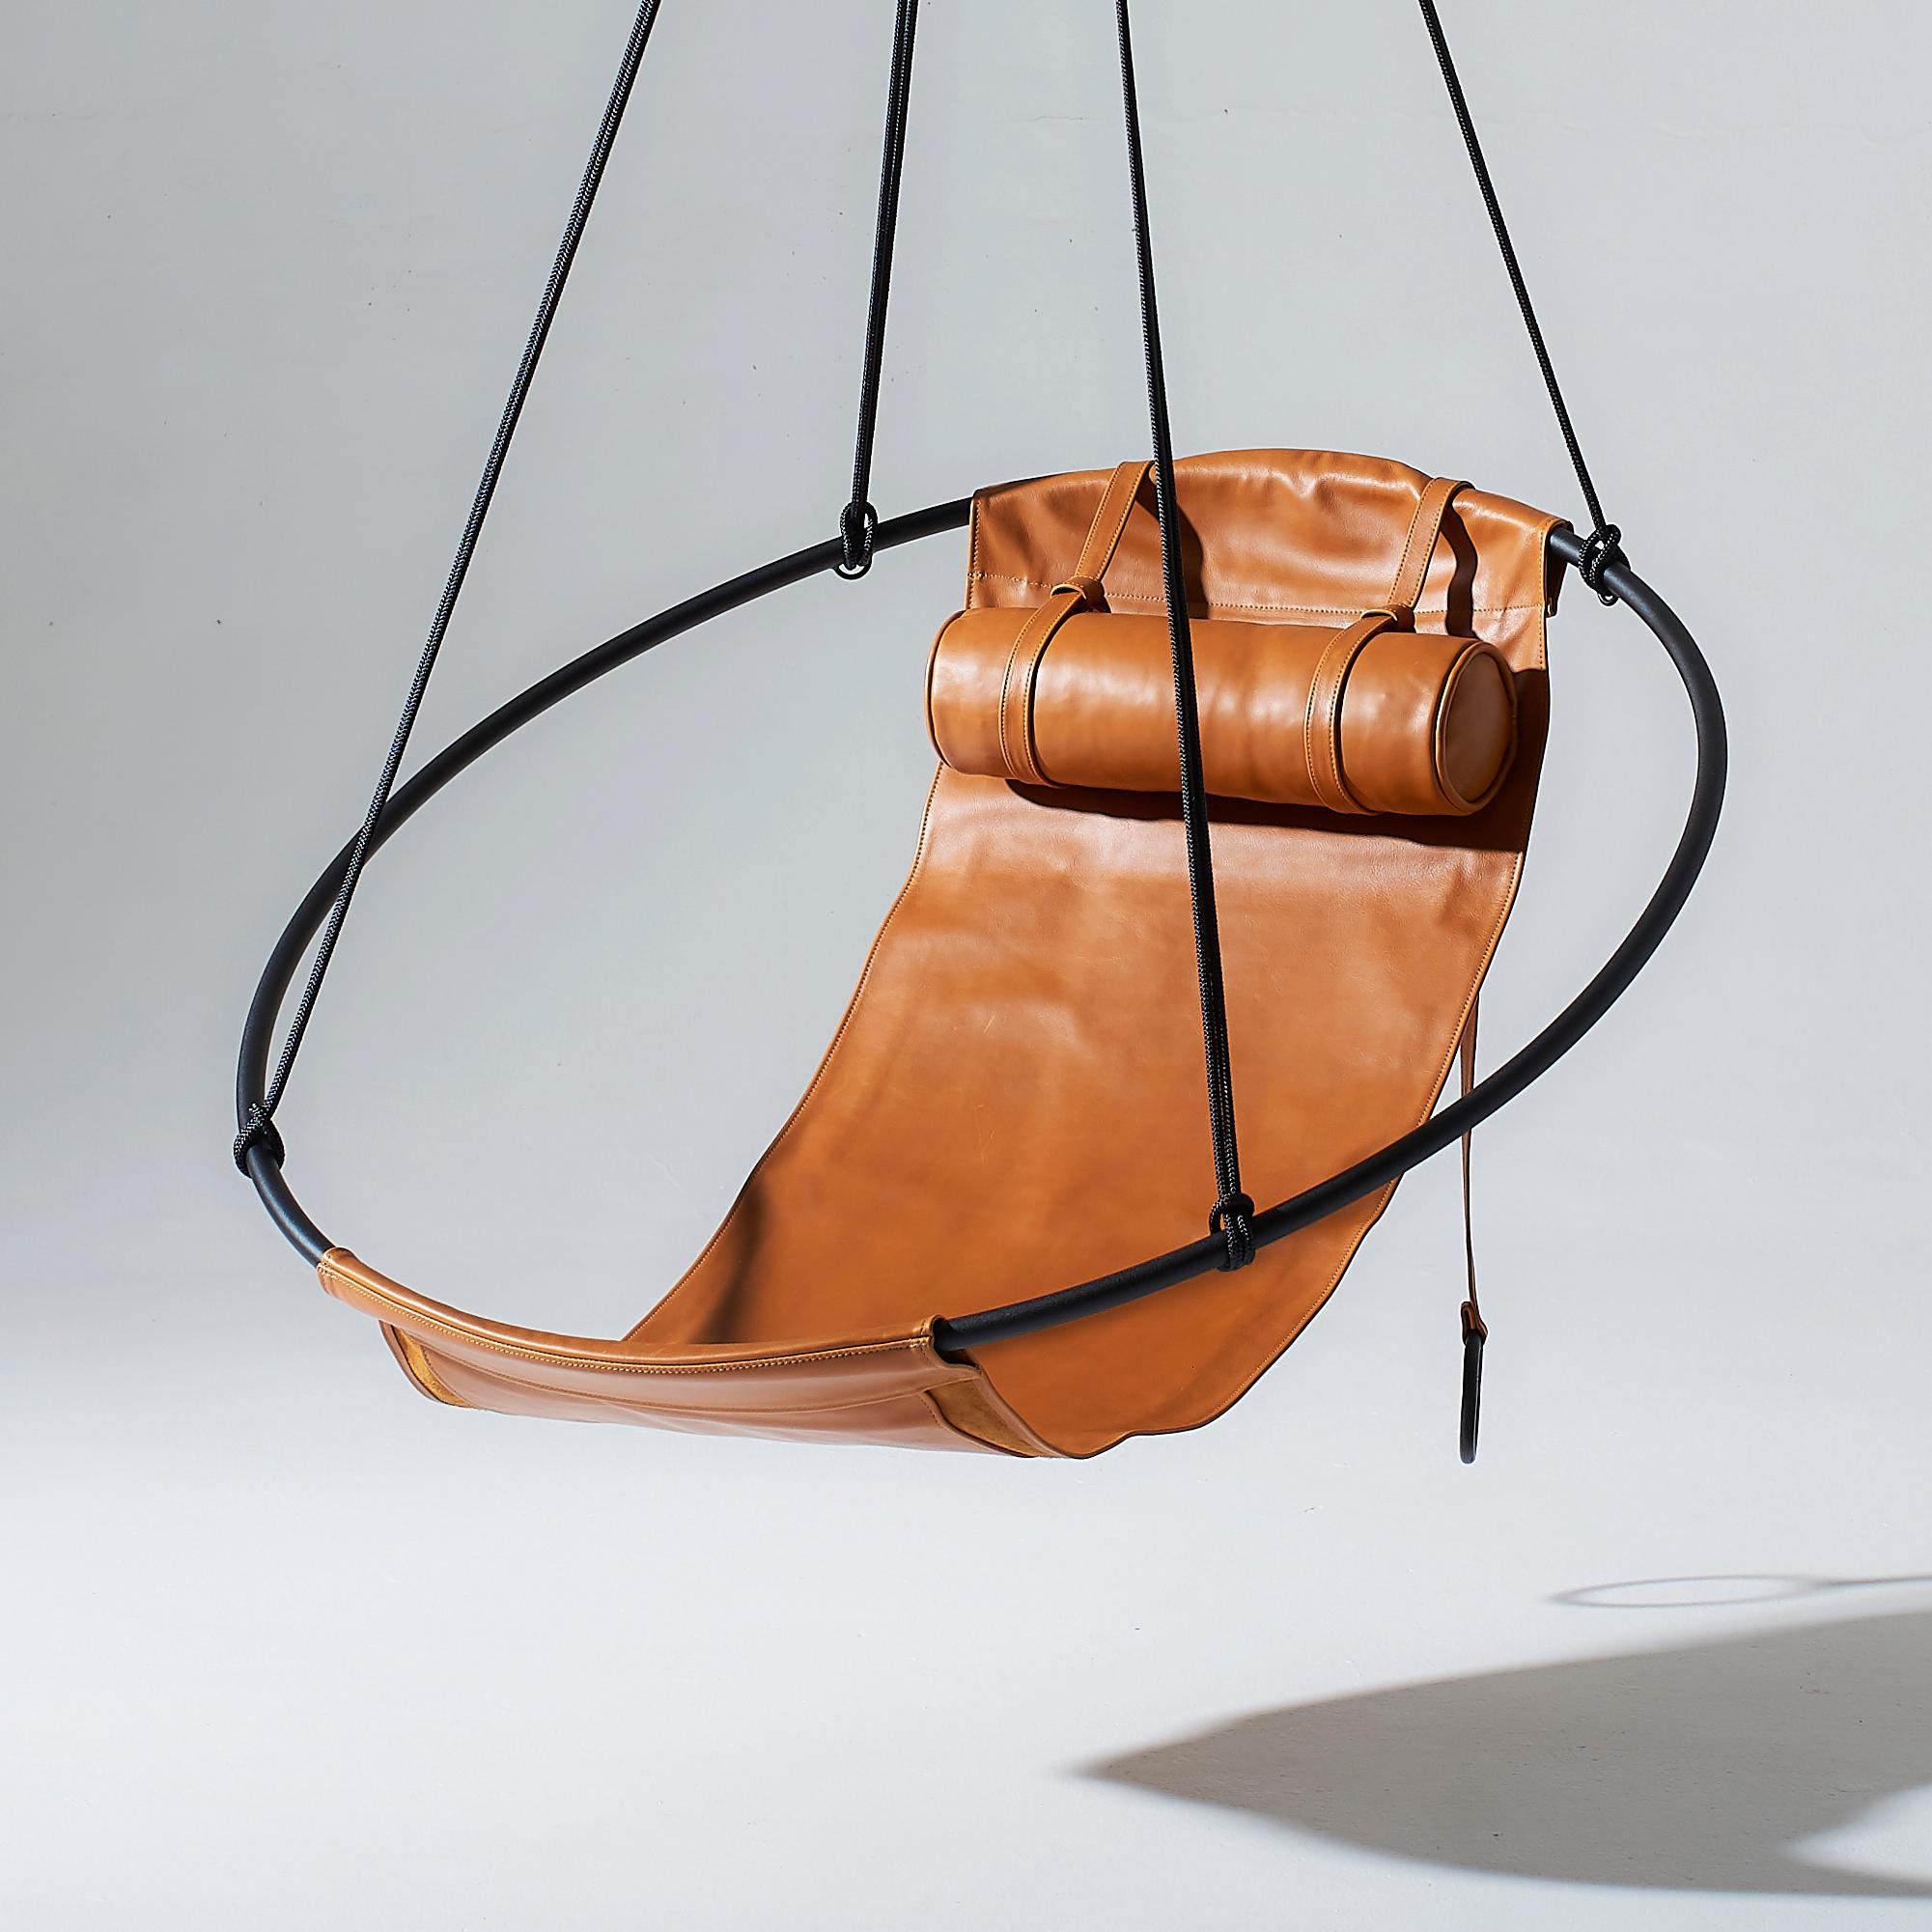 Dépouillé de tout excès, ce fauteuil suspendu présente un cadre circulaire dans lequel pendent des feuilles de cuir souple, pour créer une expérience élégante, sexy et très confortable. Les lignes épurées et la légèreté de cette chaise lui